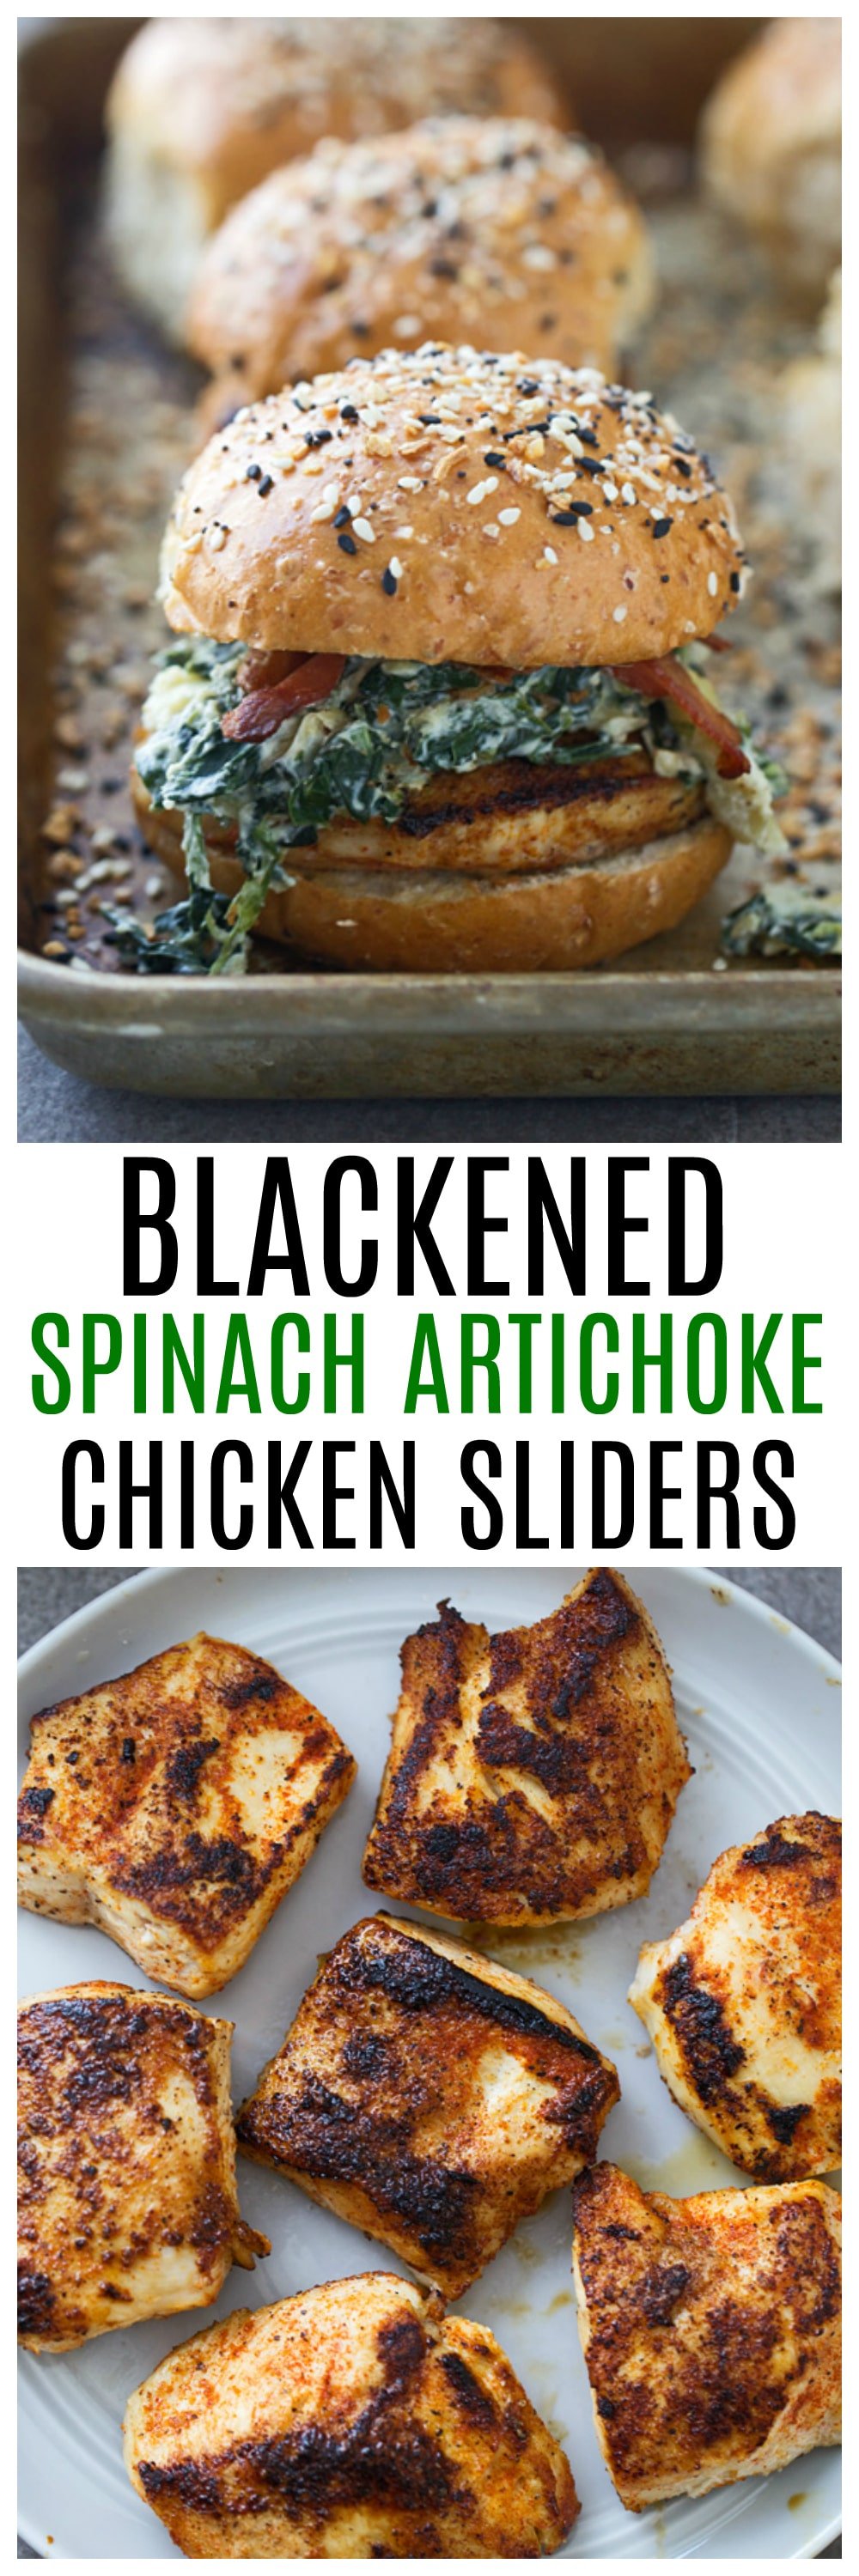 Blackened Spinach Artichoke Chicken Sliders